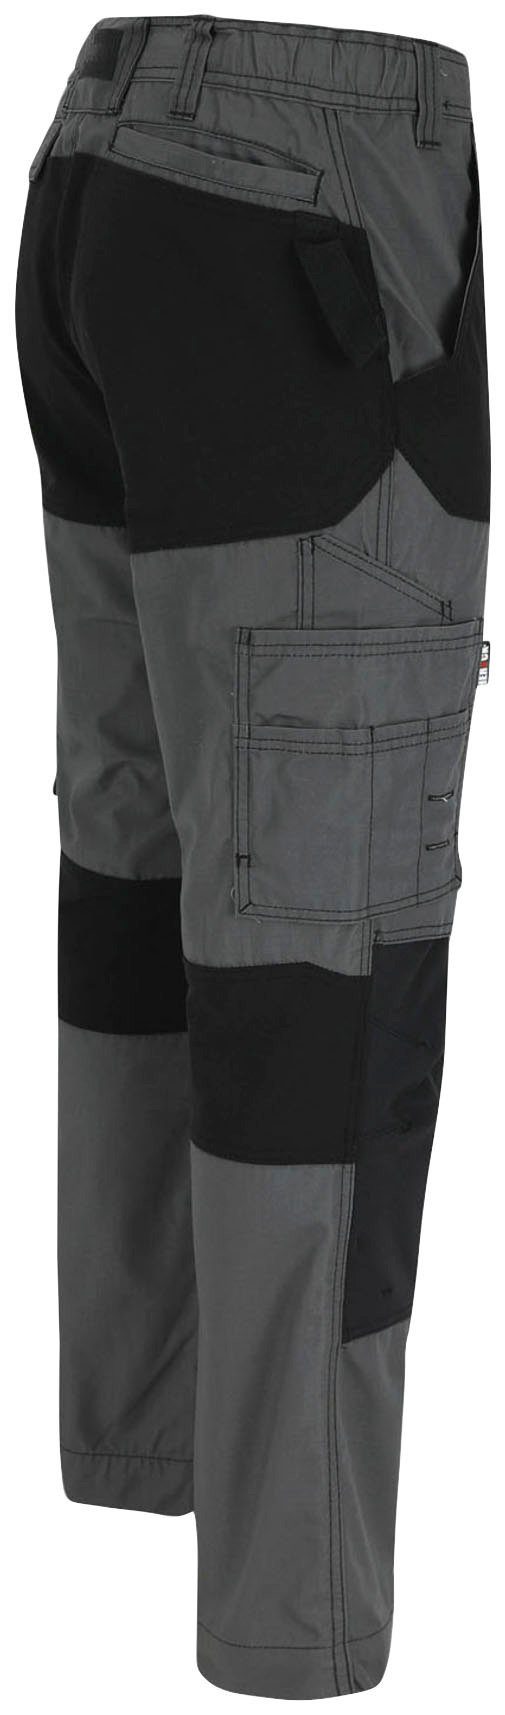 Hector verstärkte Knopf, Arbeitshose 4-Wege-Stretch, Herock grau Multi-Pocket, Knietaschen verdeckter Hoses